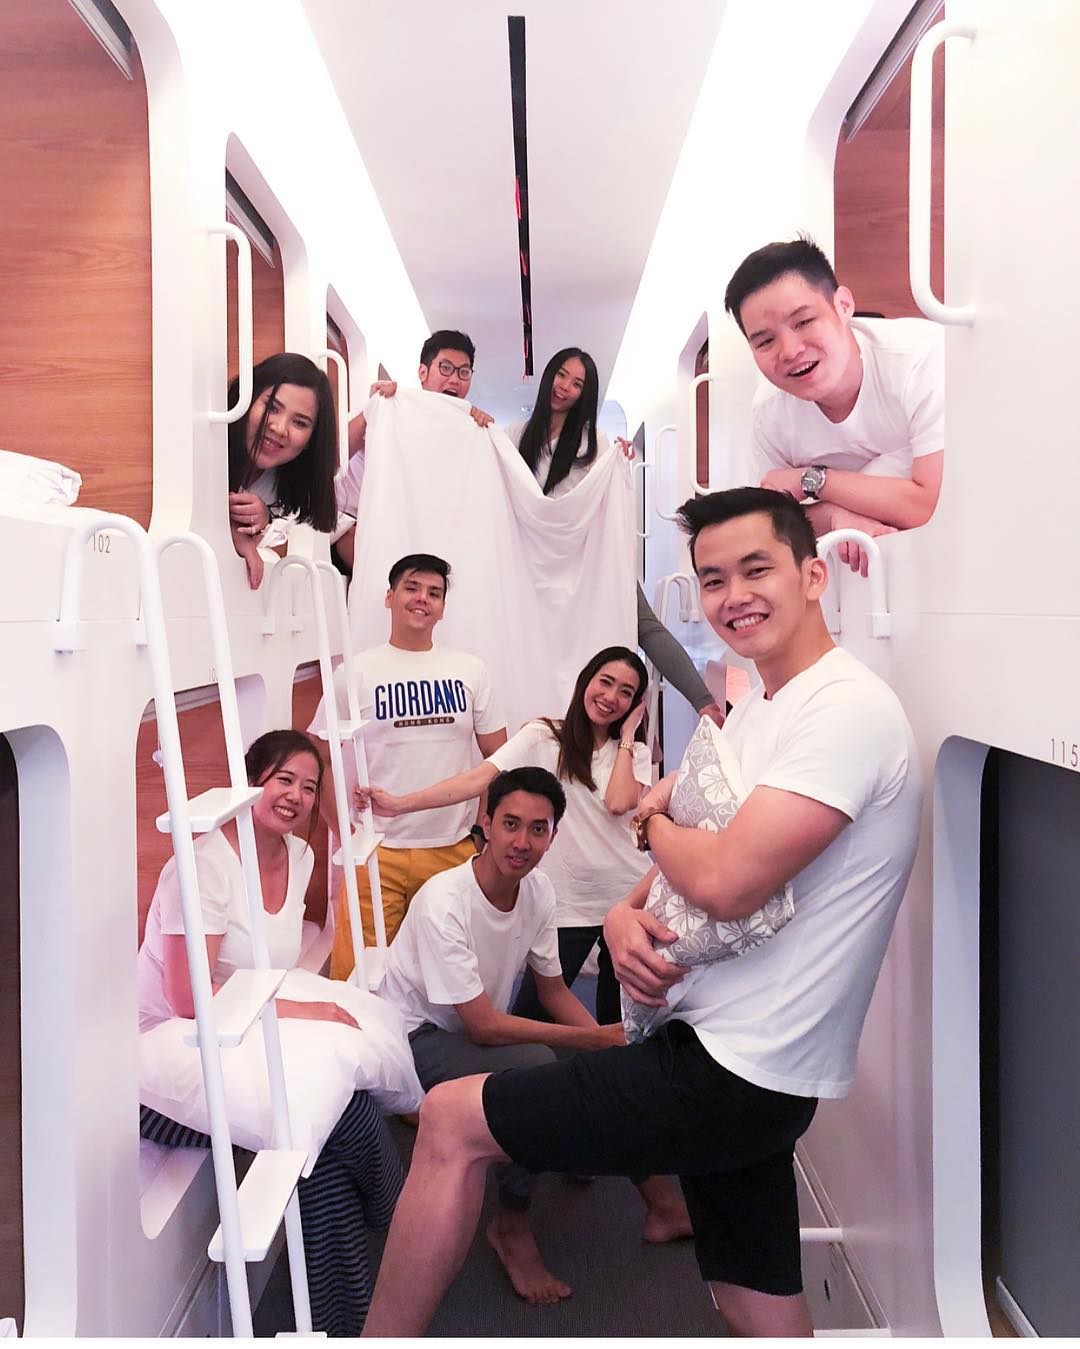 Mixed dormitory room, untuk grup travellermu, bisa dicoba nih - via instagram/@calvingunawan_mc